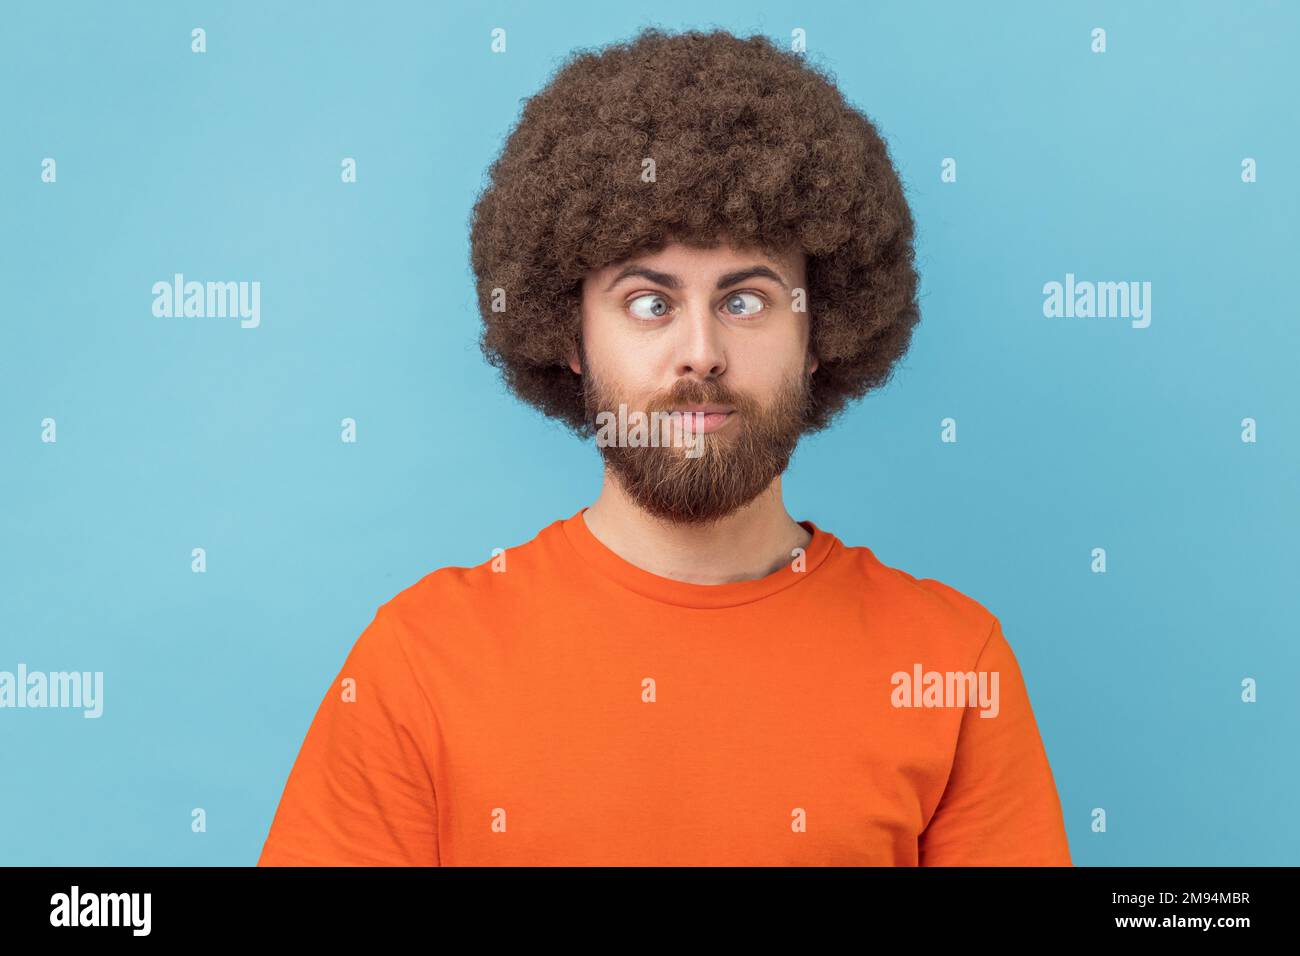 Portrait eines verrückten, lustigen Mannes mit Afro-Haarschnitt, der ein orangefarbenes T-Shirt trägt, mit gekreuzten Augen steht und mit einem albernen komischen Gesicht aussieht. Innenstudio, isoliert auf blauem Hintergrund. Stockfoto